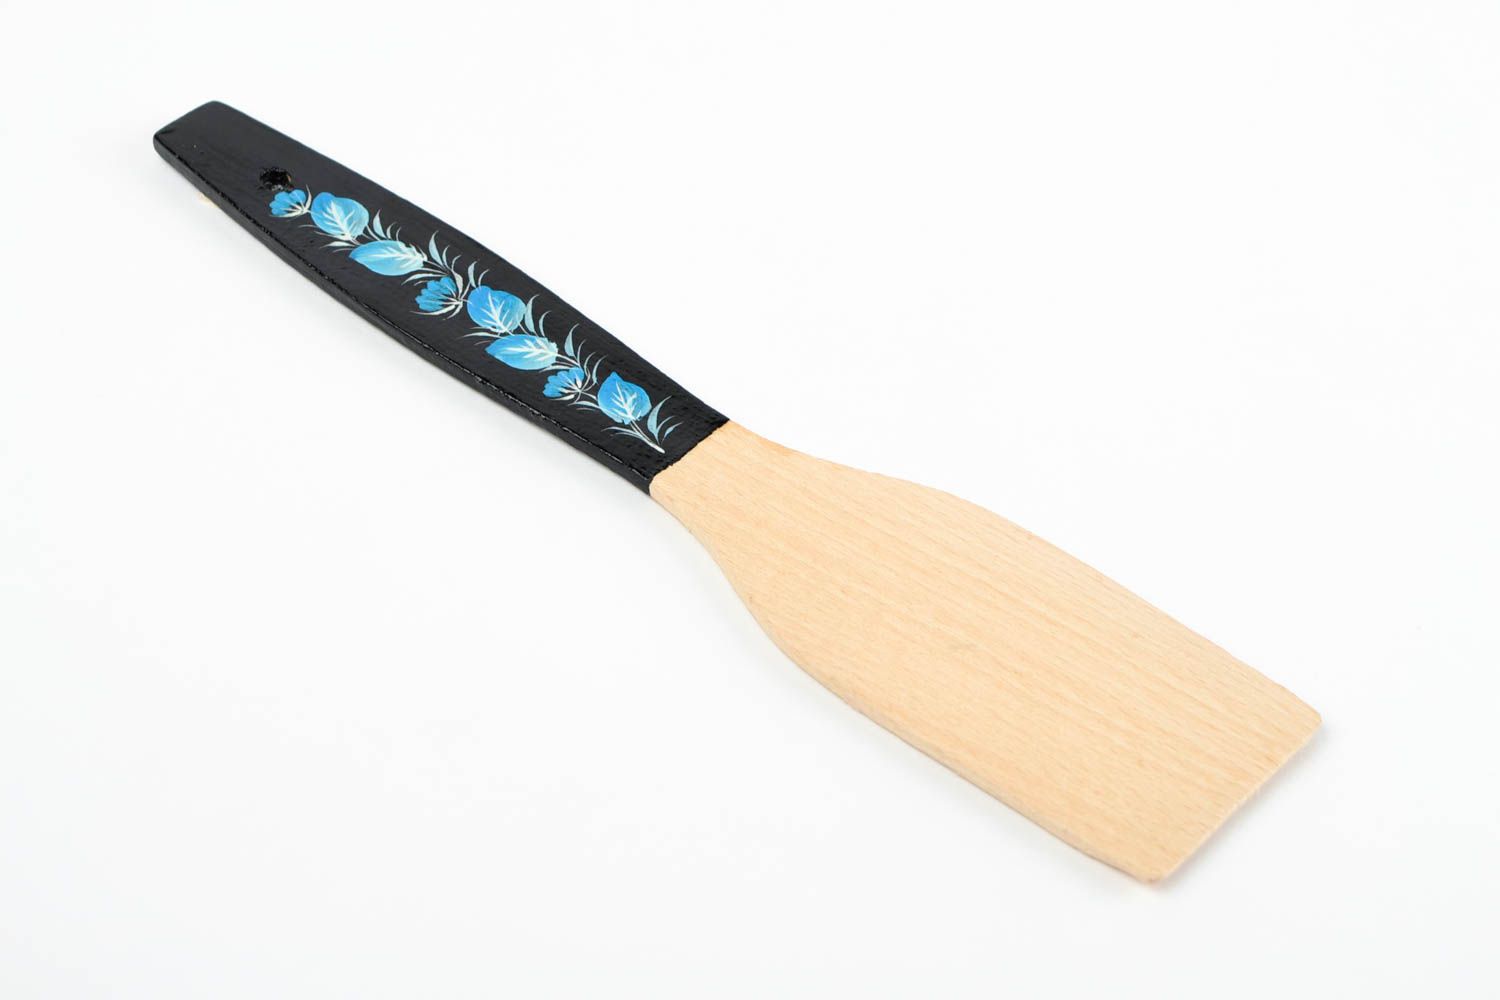 Handmade beautiful wooden spatula stylish kitchen utensil cute kitchen accessory photo 5